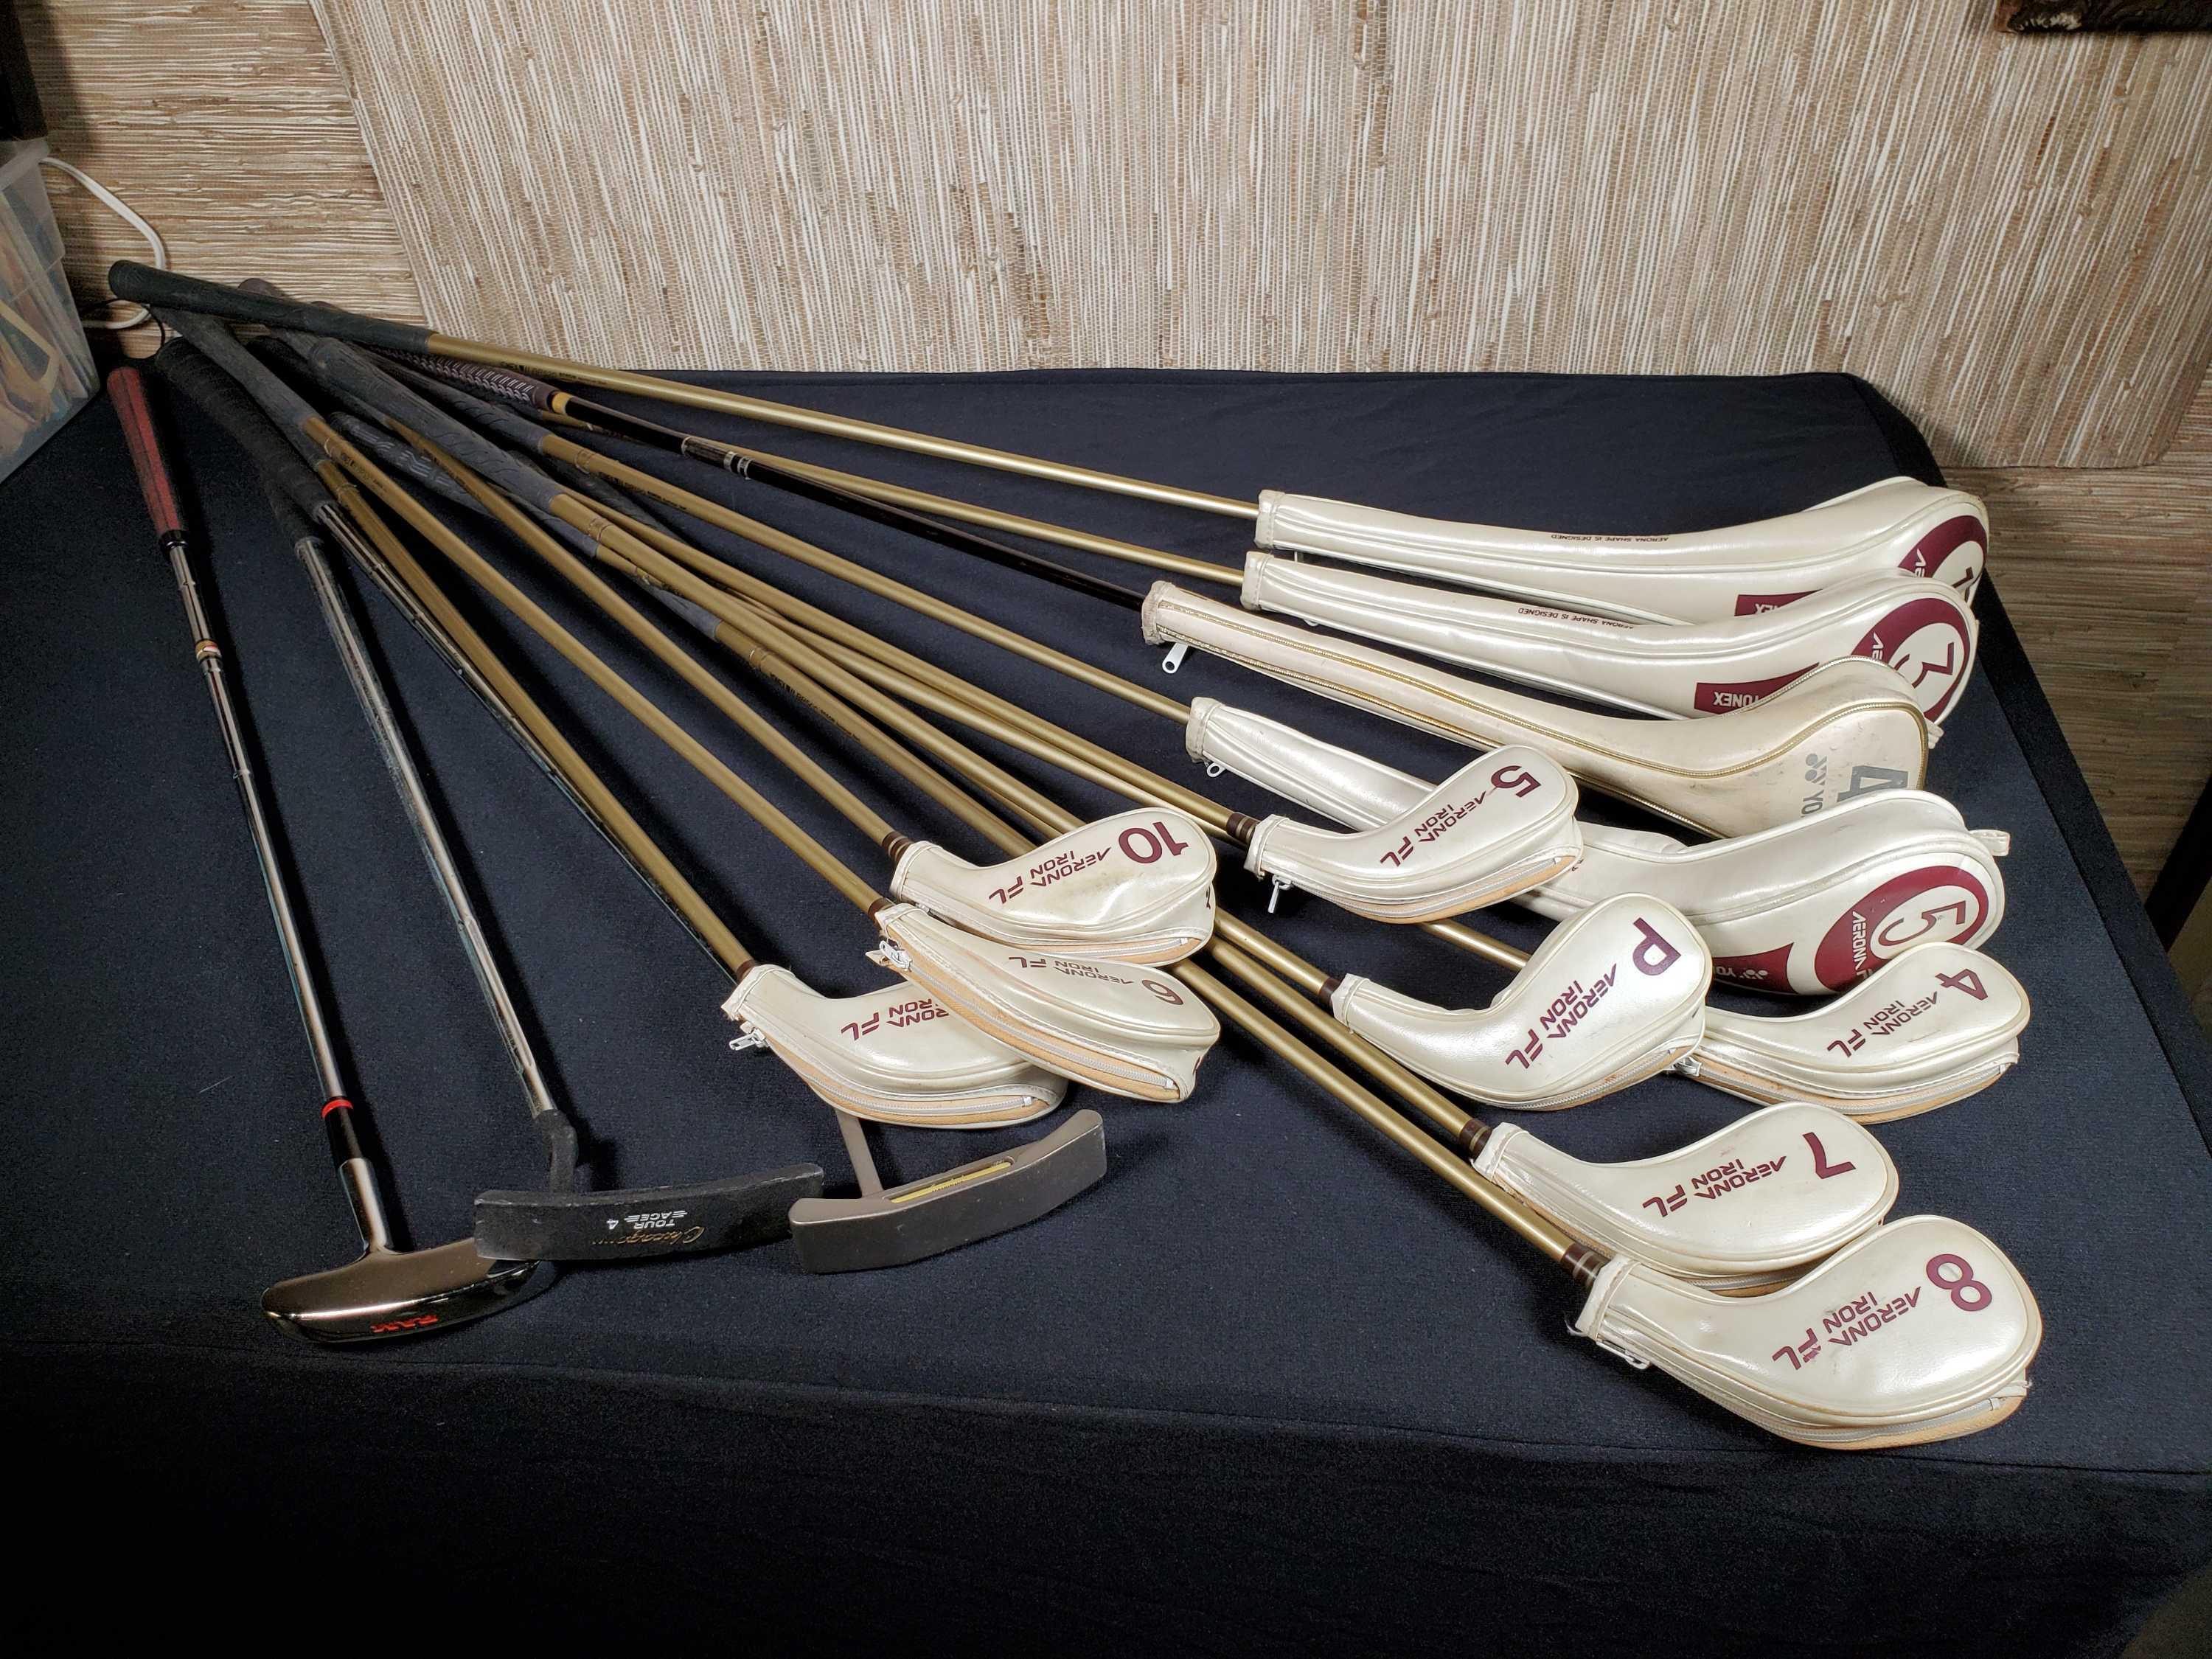 Louis Vuitton Golf Club Bag And 12 Yonex Right Hand Clubs